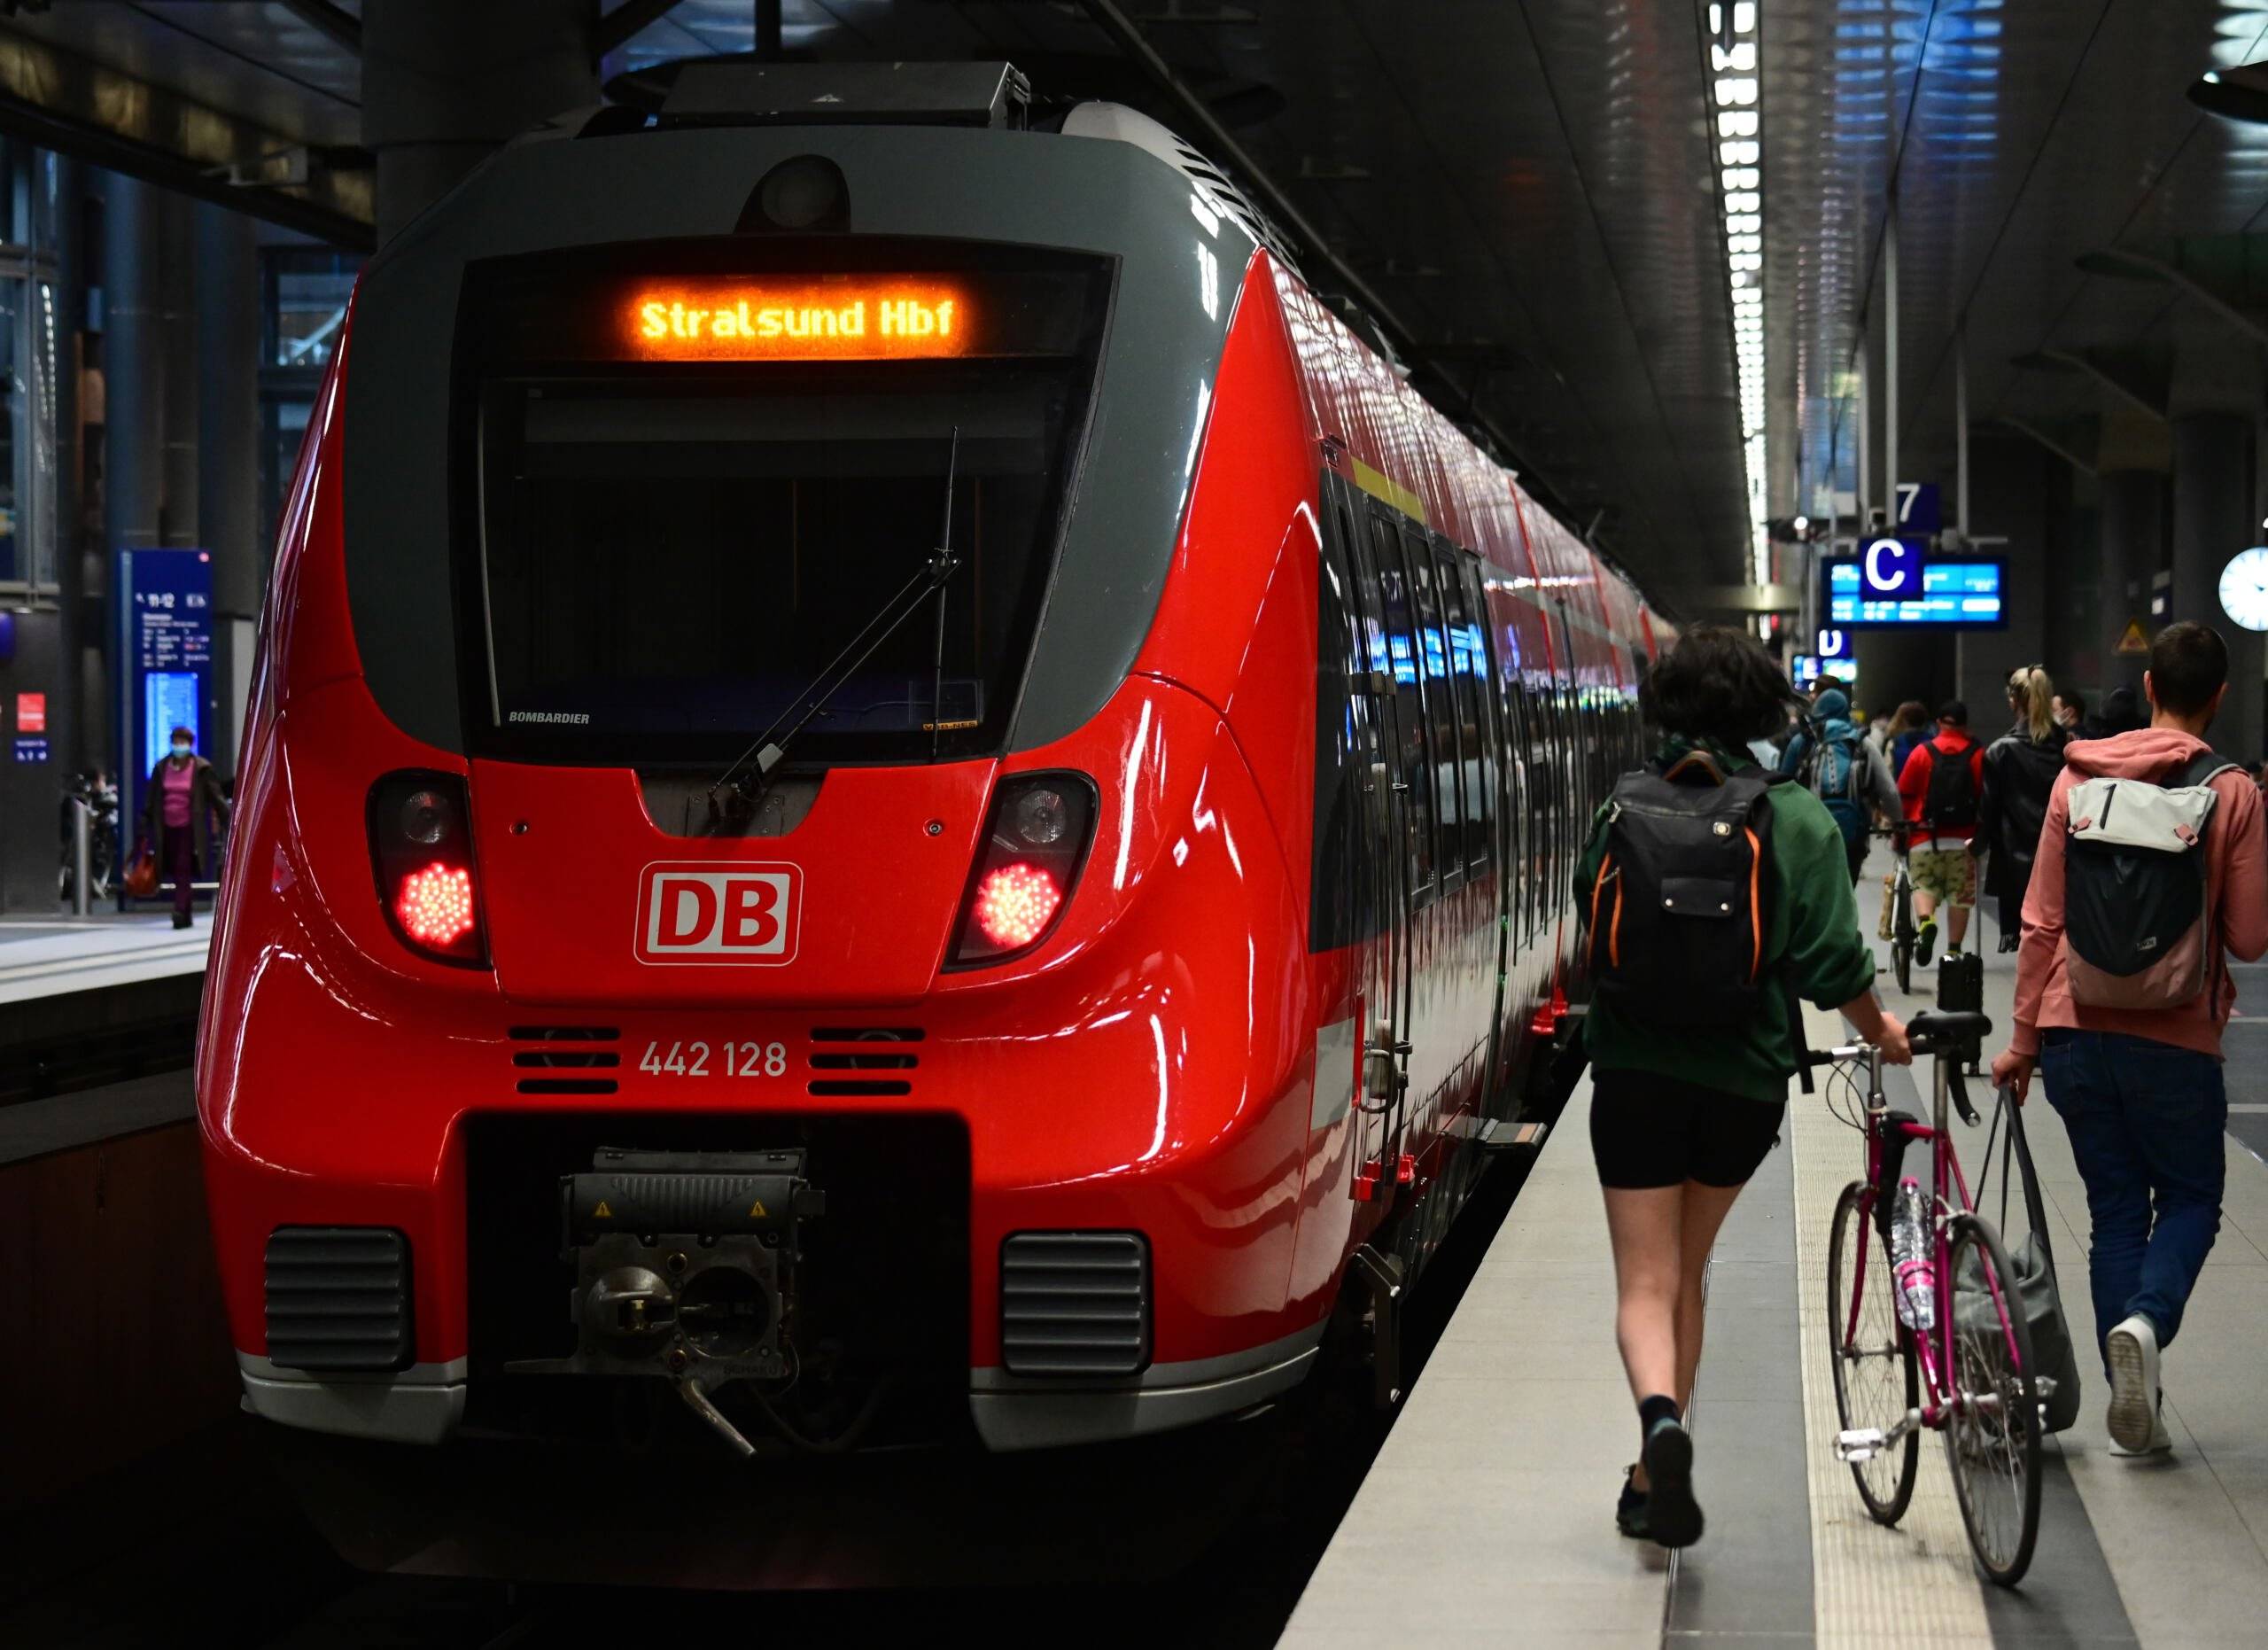 Niemcy jadą tanim pociągiem i mają rower